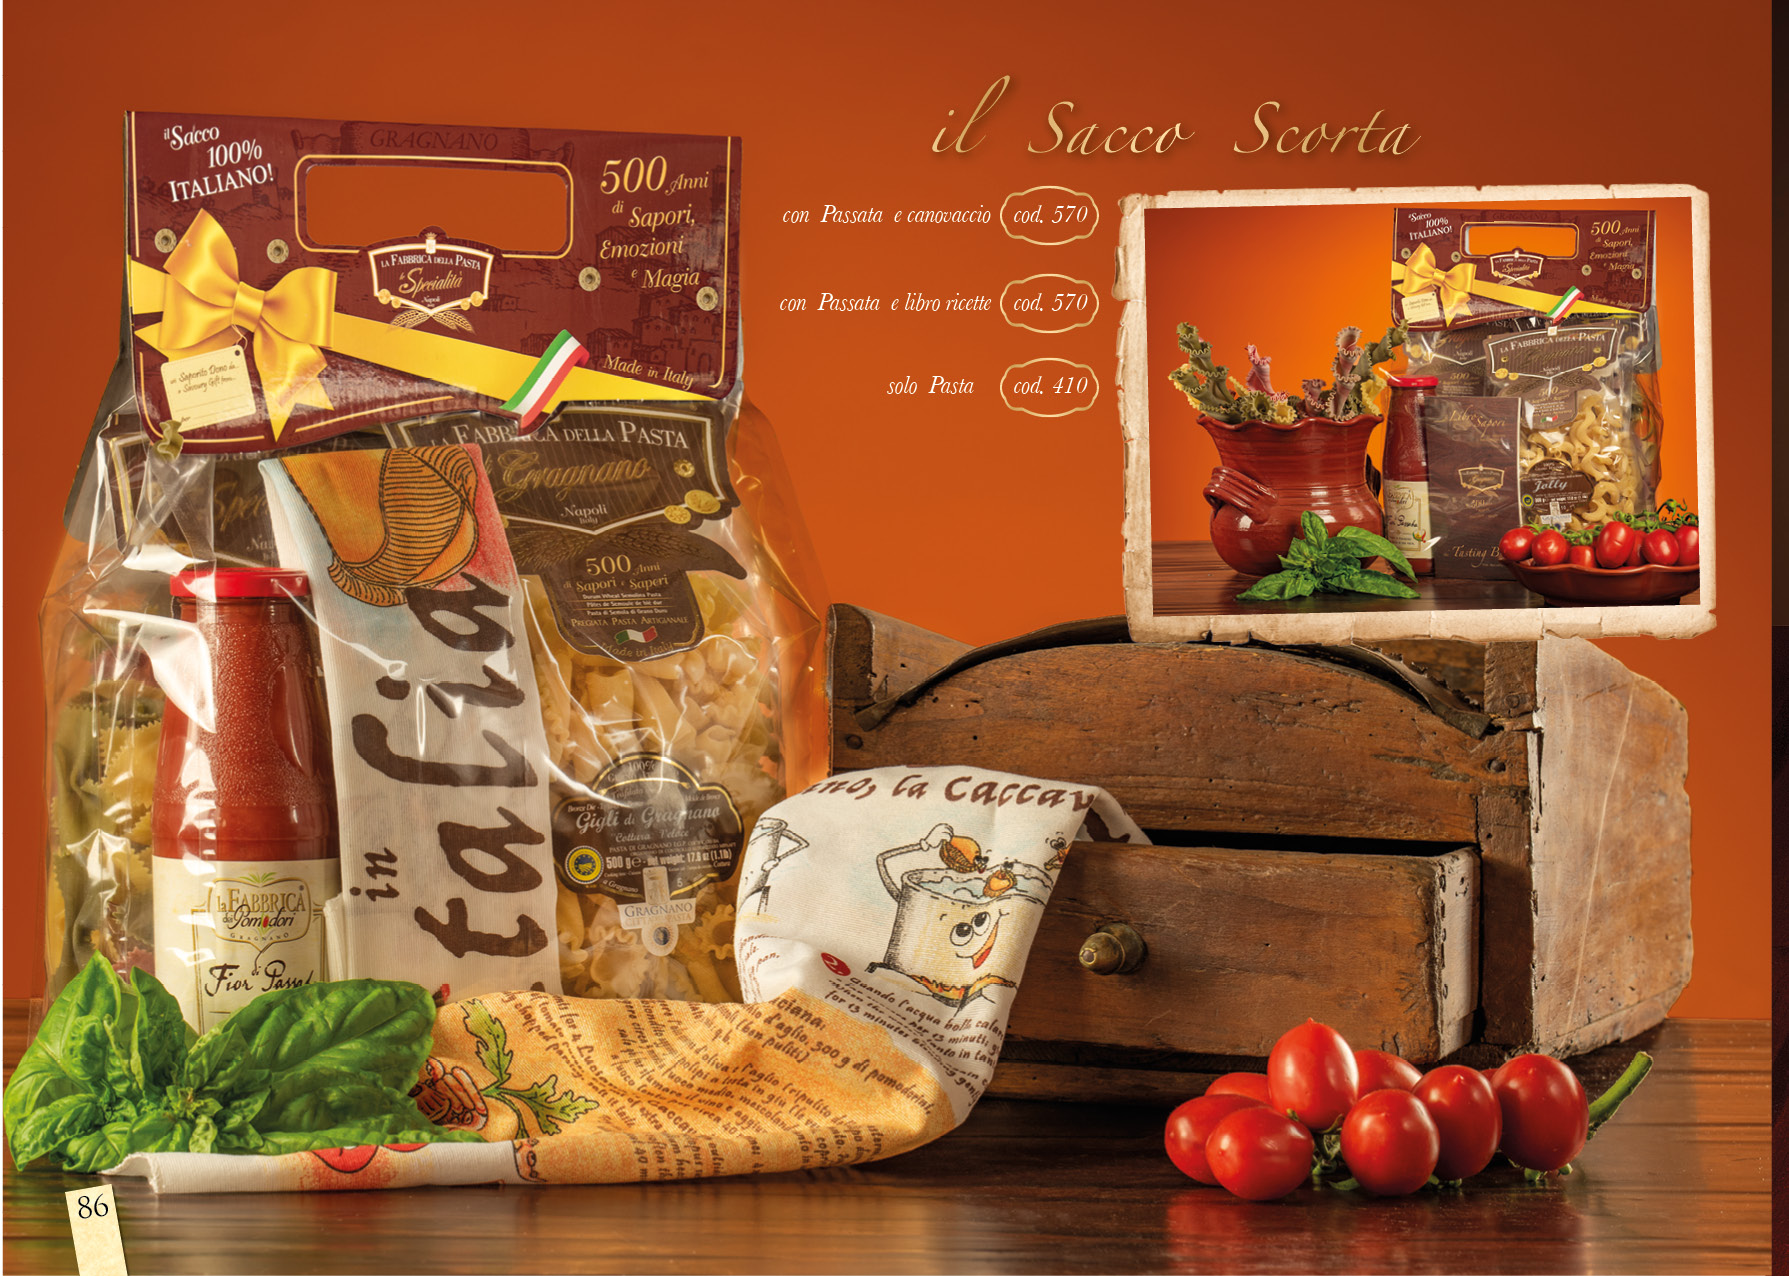 Pasta-Set "Sacco Scorta" Gragano IGP 3x500g Pasta mit Tomatensoße